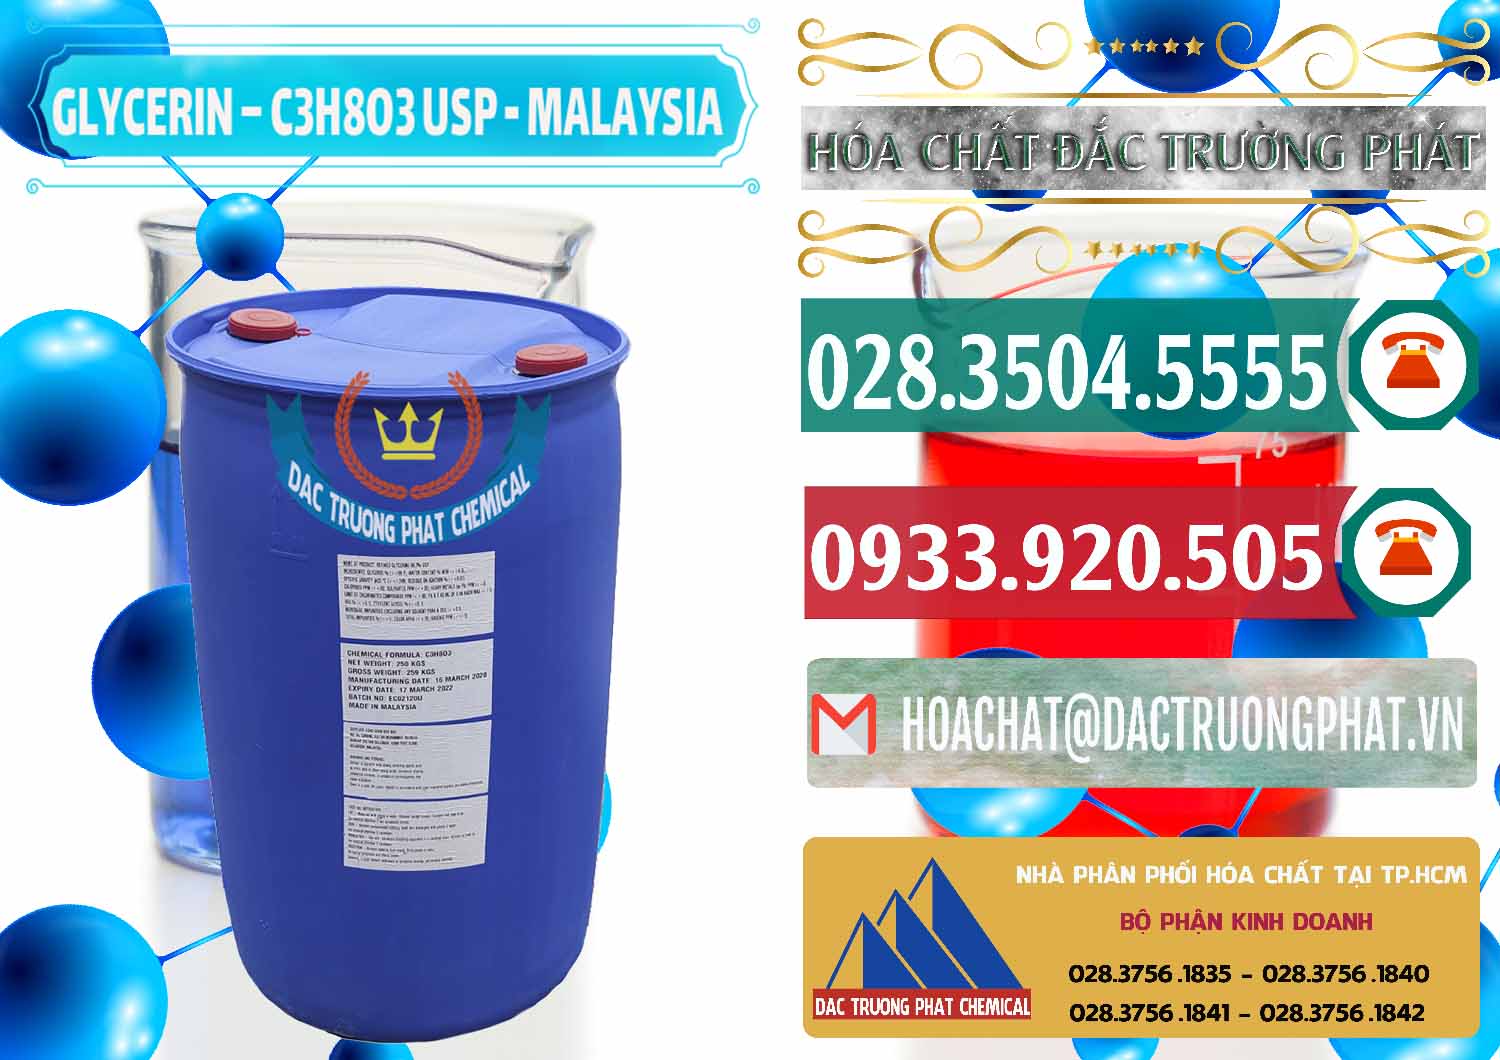 Cty chuyên bán _ cung ứng Glycerin – C3H8O3 USP Malaysia - 0233 - Nơi chuyên kinh doanh & cung cấp hóa chất tại TP.HCM - muabanhoachat.vn